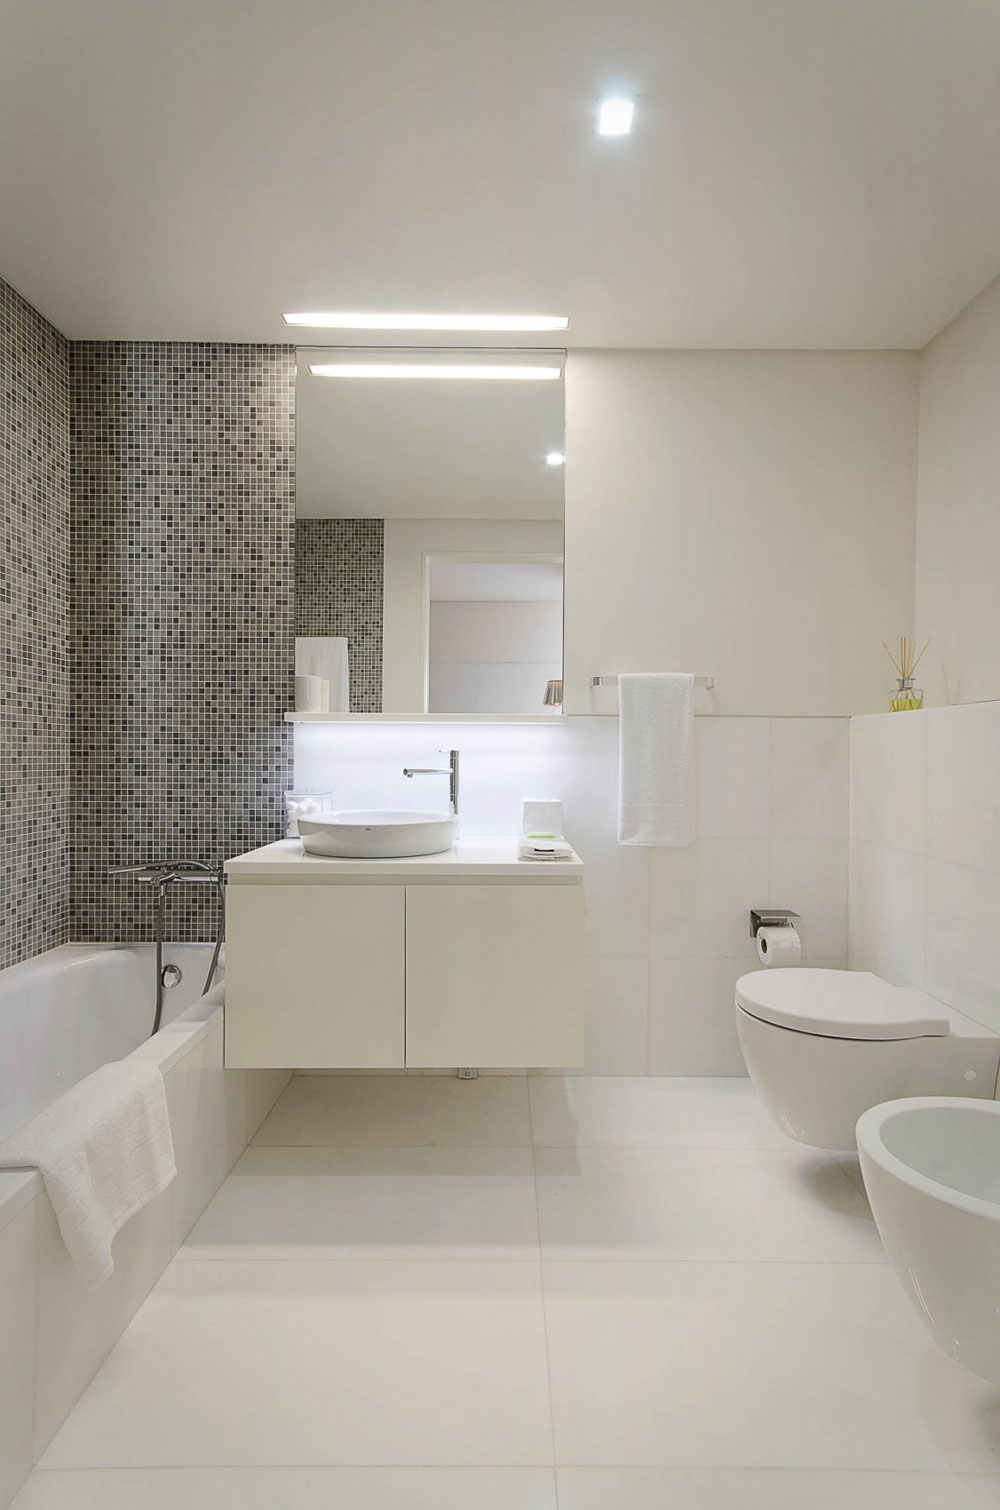 Letar du efter inspiration för modern badrumsinredning-14 Letar du efter inspiration för modern badrumsinredning?